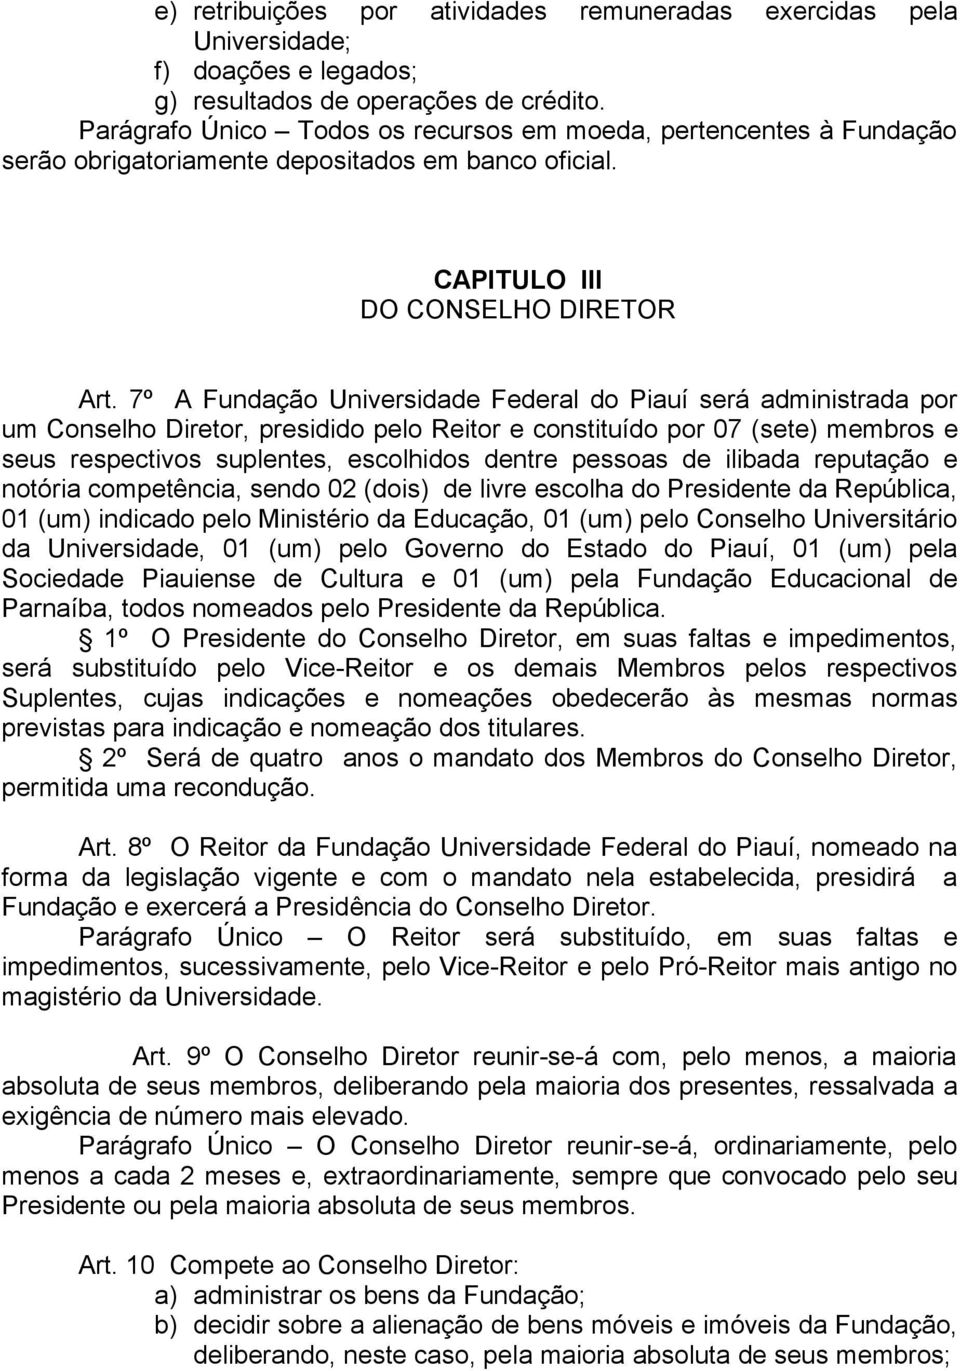 7º A Fundação Universidade Federal do Piauí será administrada por um Conselho Diretor, presidido pelo Reitor e constituído por 07 (sete) membros e seus respectivos suplentes, escolhidos dentre